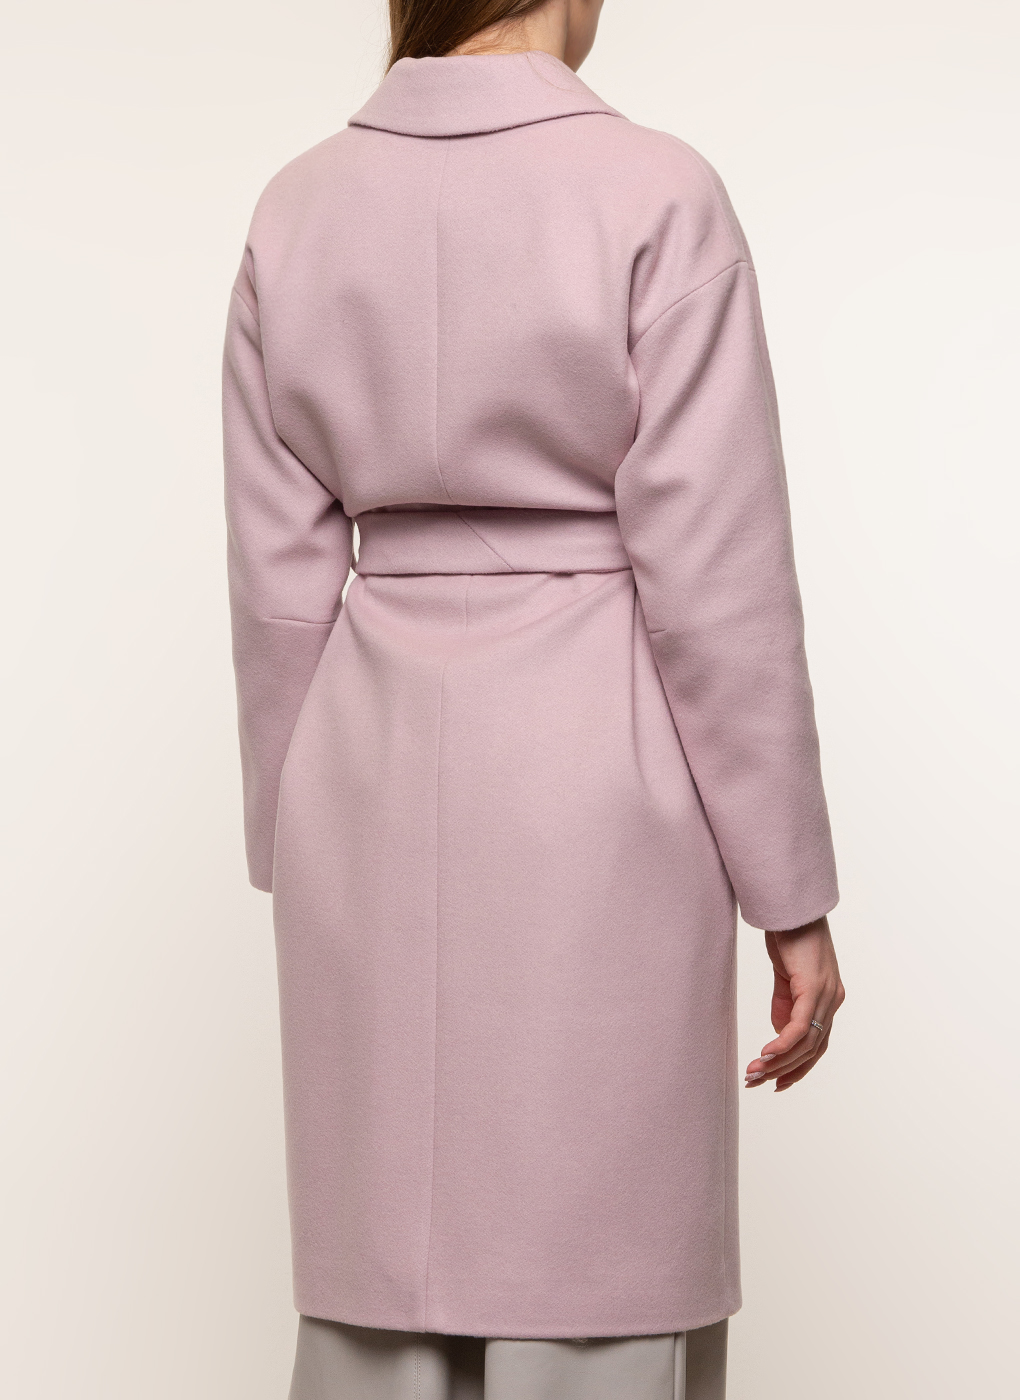 Пальто женское idekka 45536 розовое 46 RU